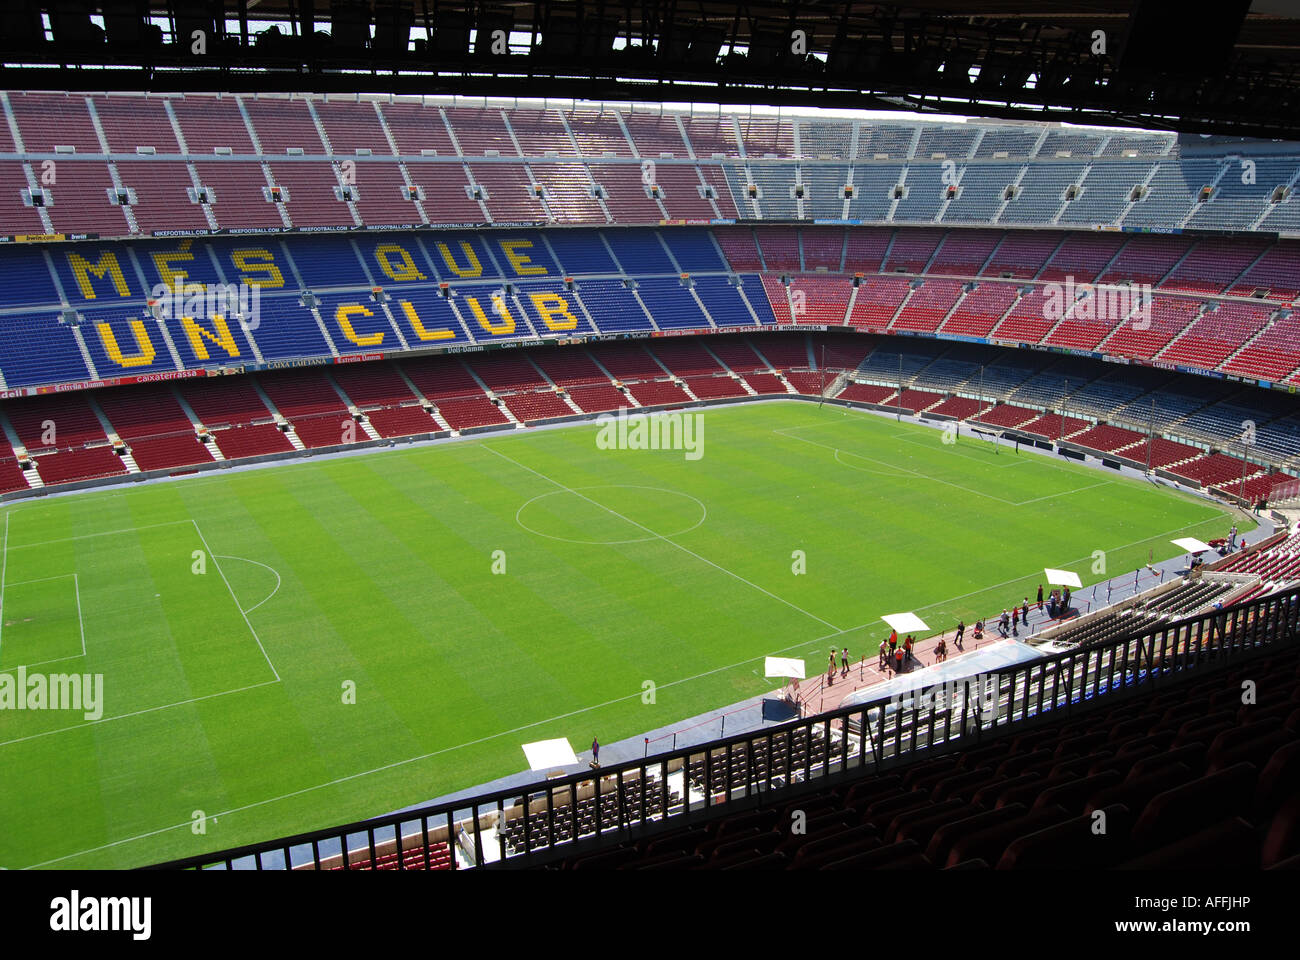 Des sièges vides dans le stade de football club Barcelone Espagne Banque D'Images